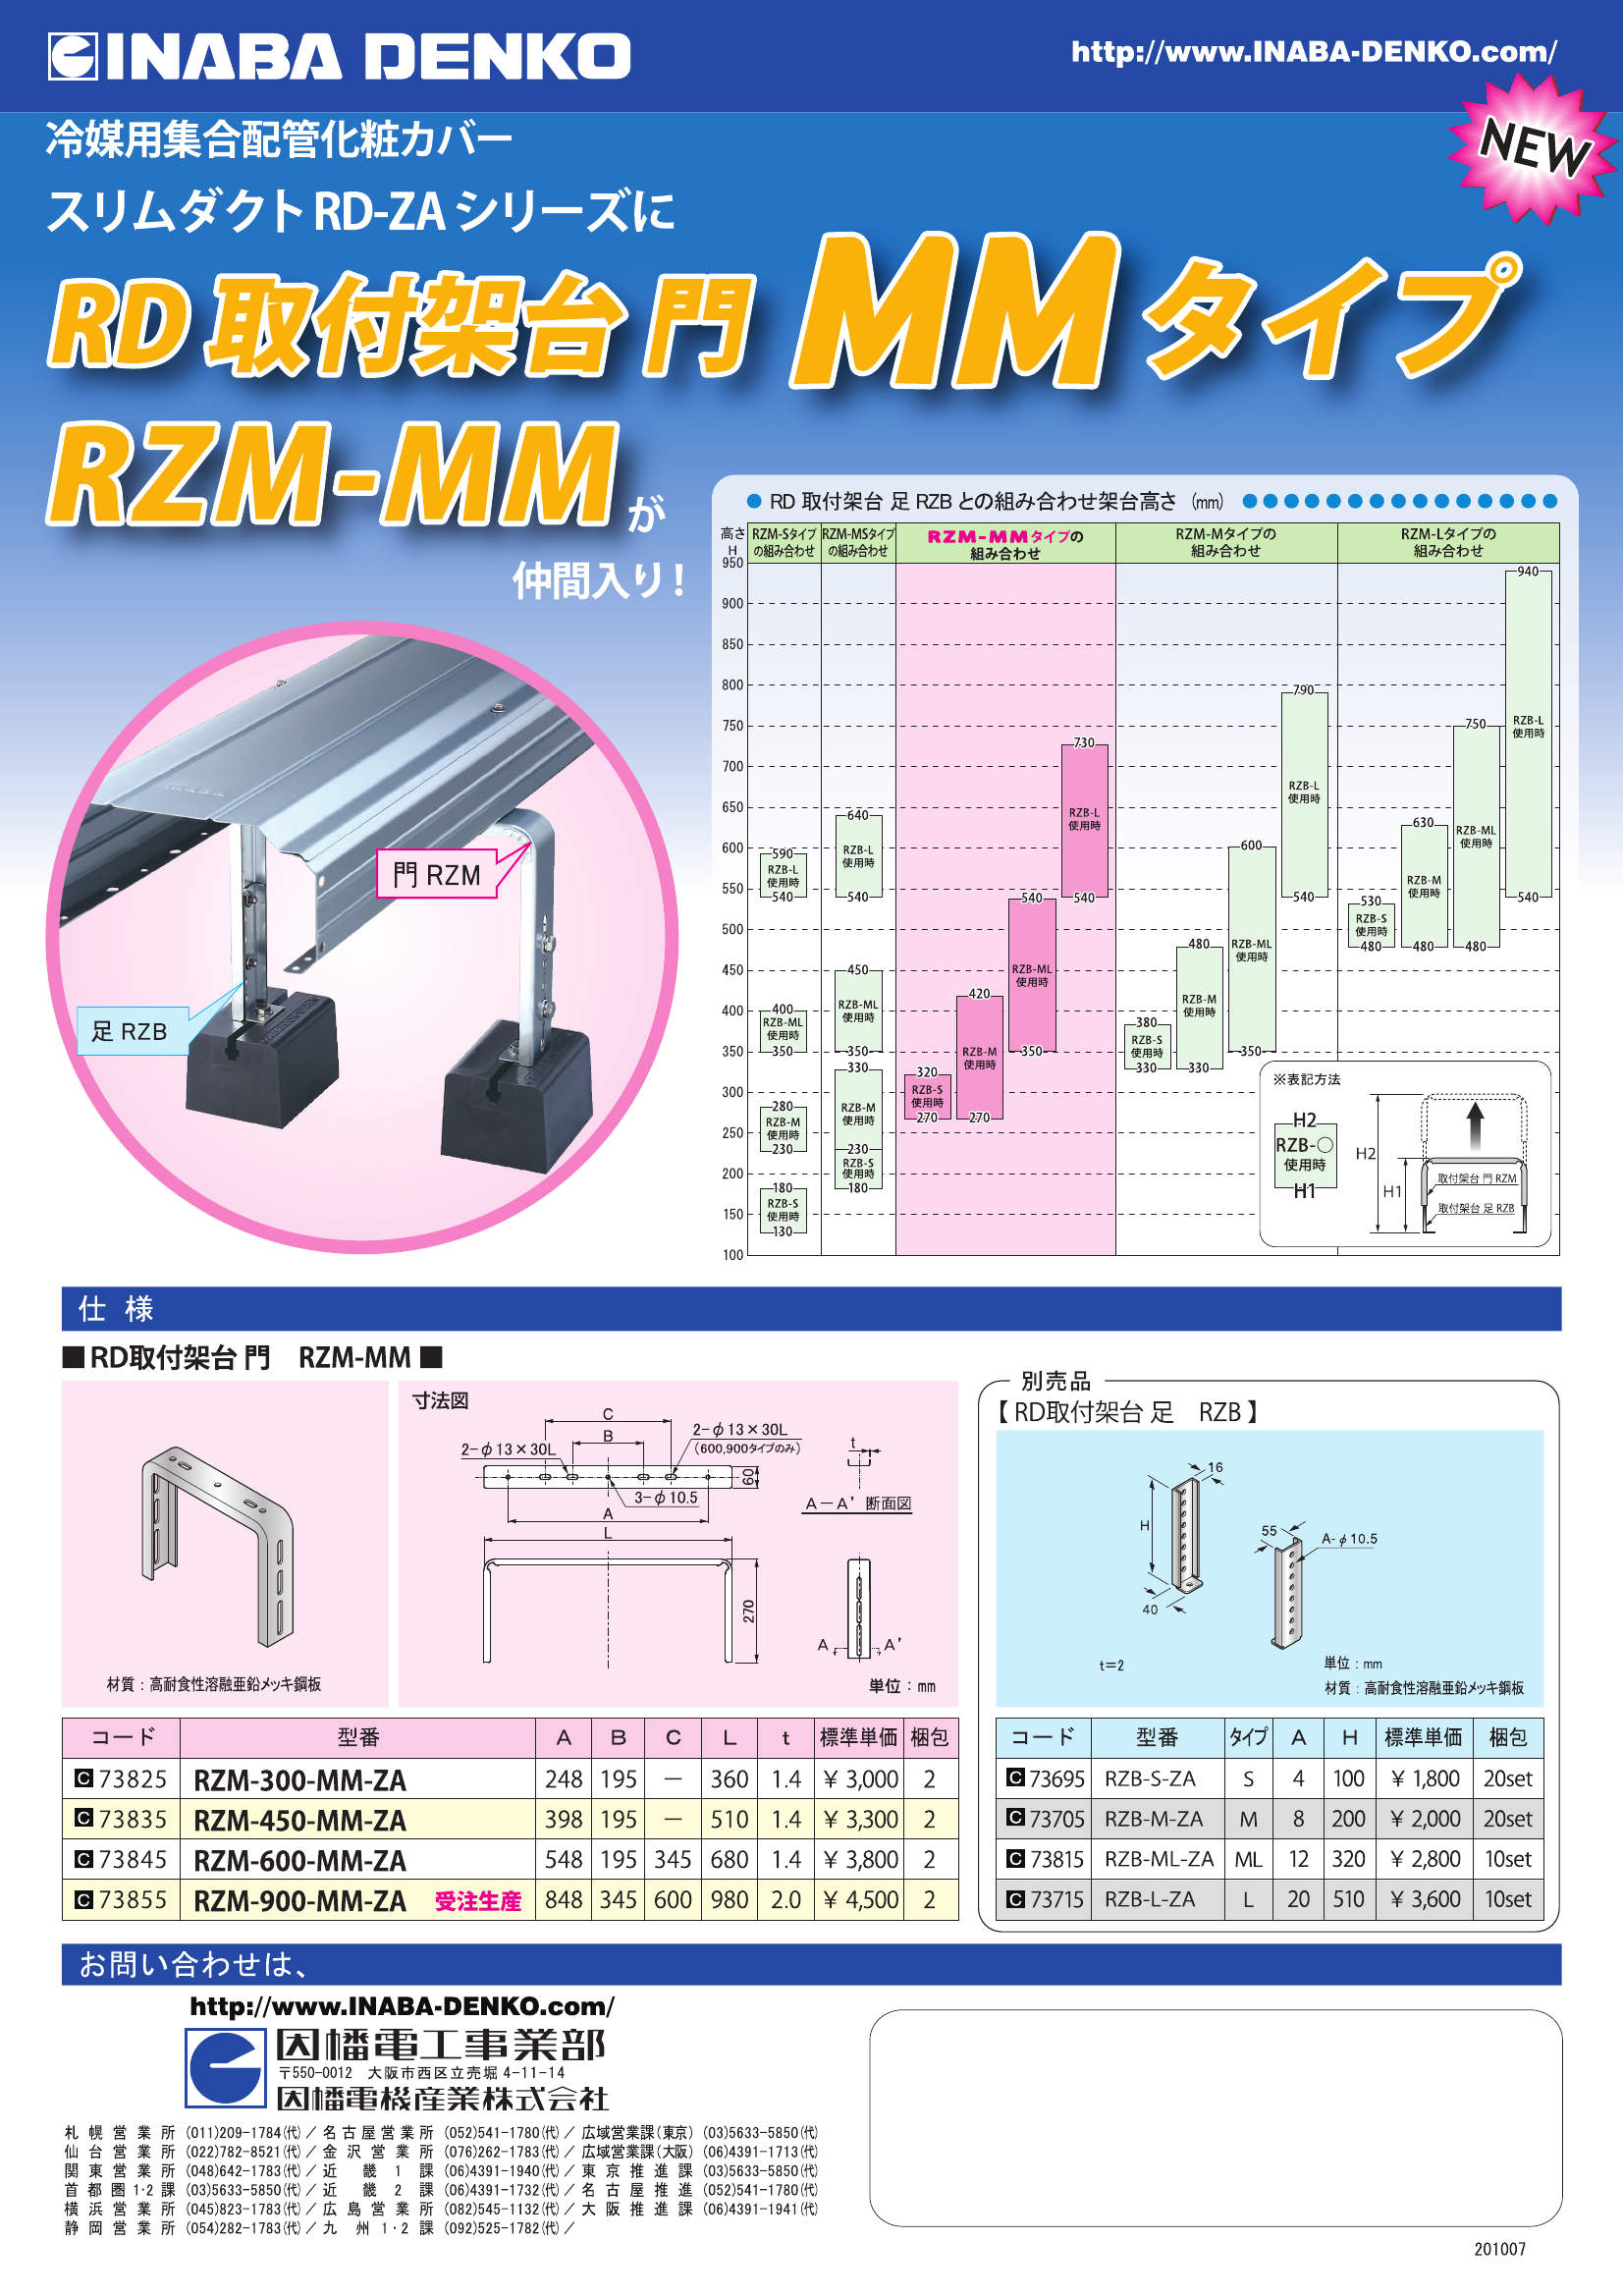 RZM-MM_製品パンフレット_20100729.pdf